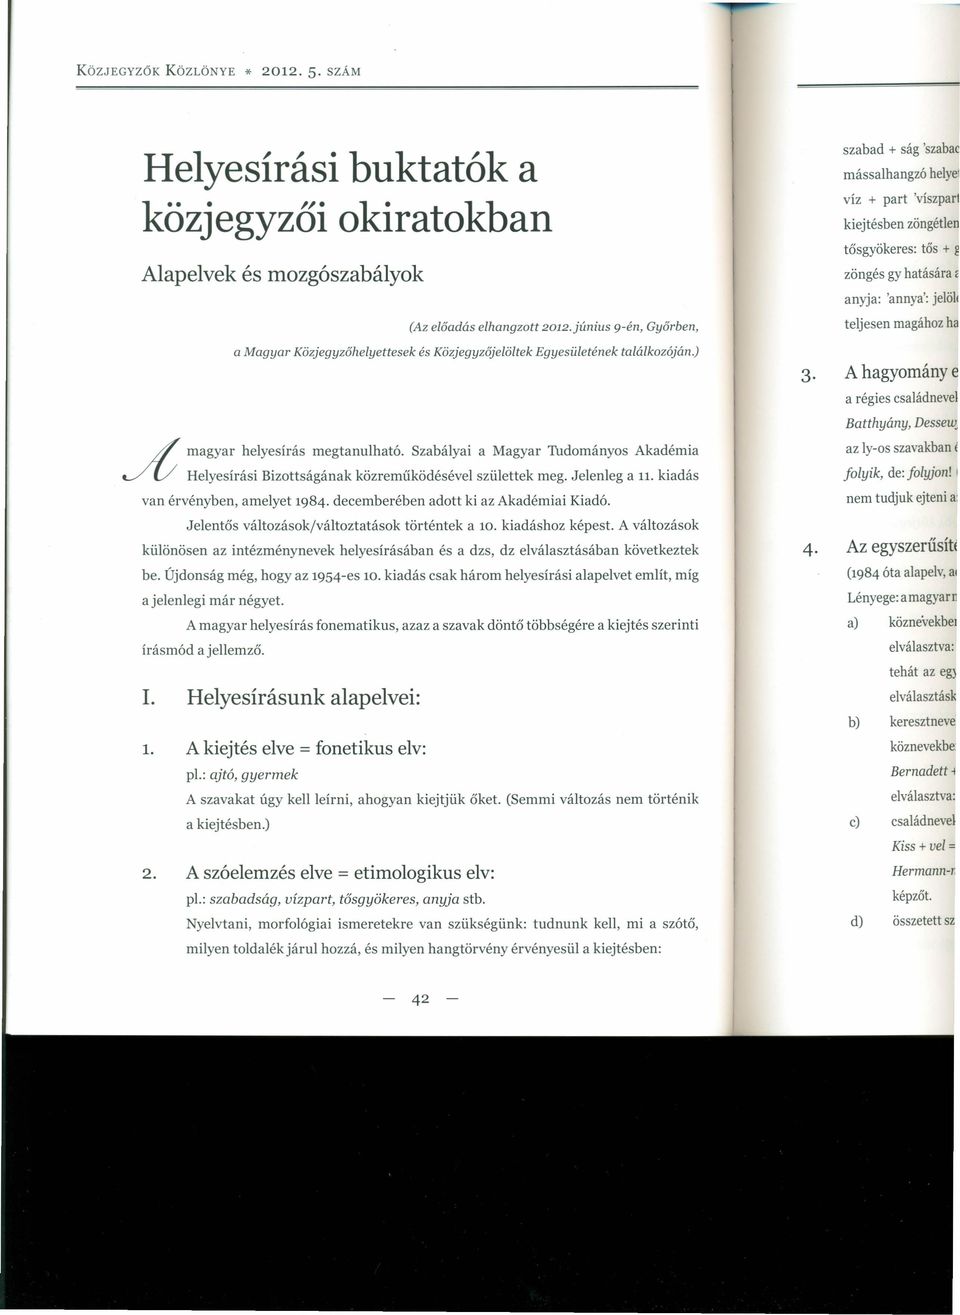 Szabályai a Magyar Tudományos Akadémia JU Helyesírási Bizottságának közreműködésével születtek meg. Jelenleg a 11. kiadás van érvényben, amelyet 1984. decemberében adott ki az Akadémiai Kiadó.